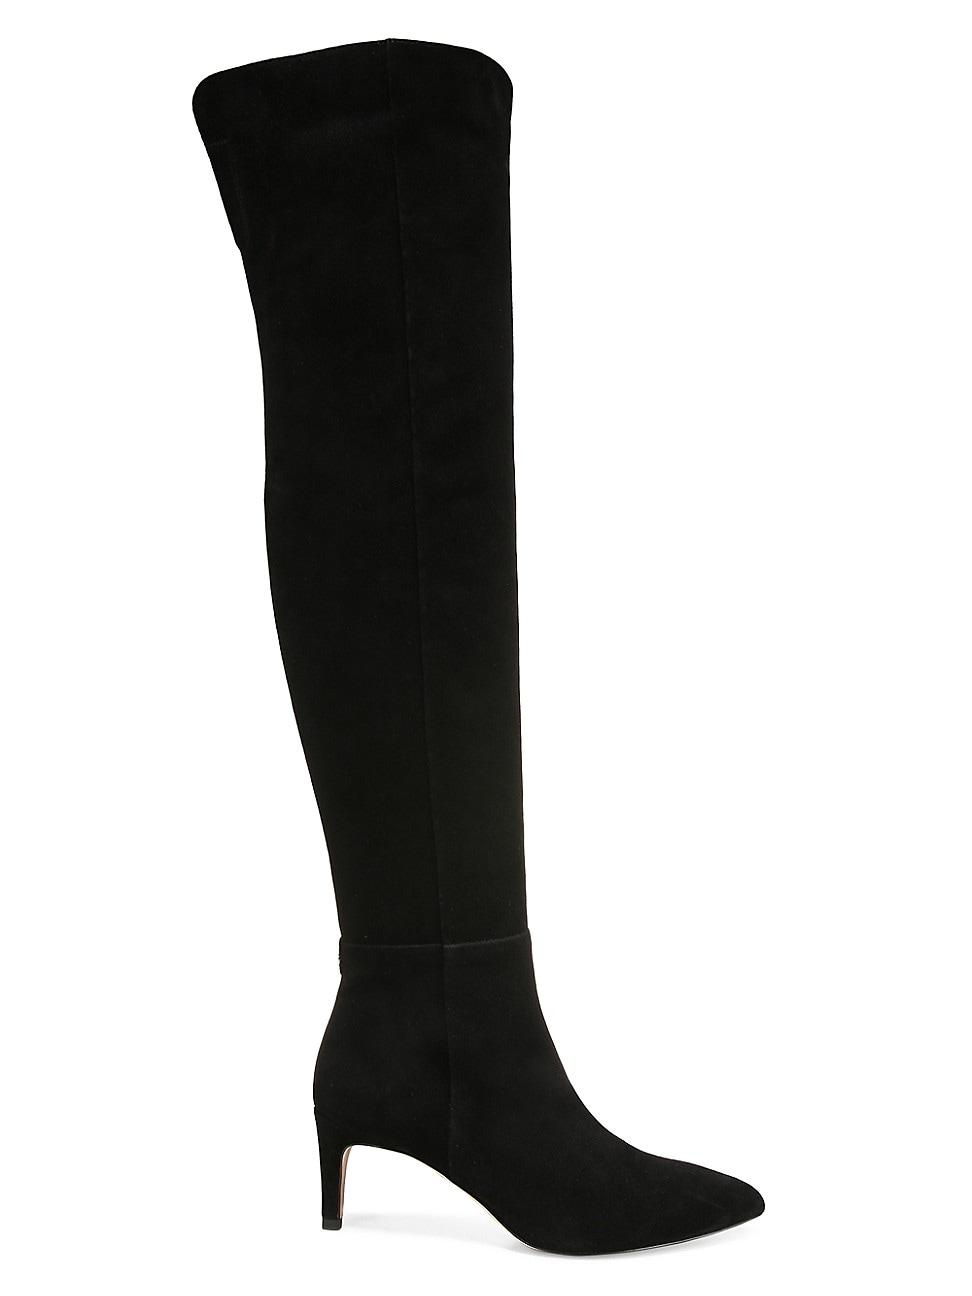 Sam Edelman Ursula Suede High Boots in Black | Lyst